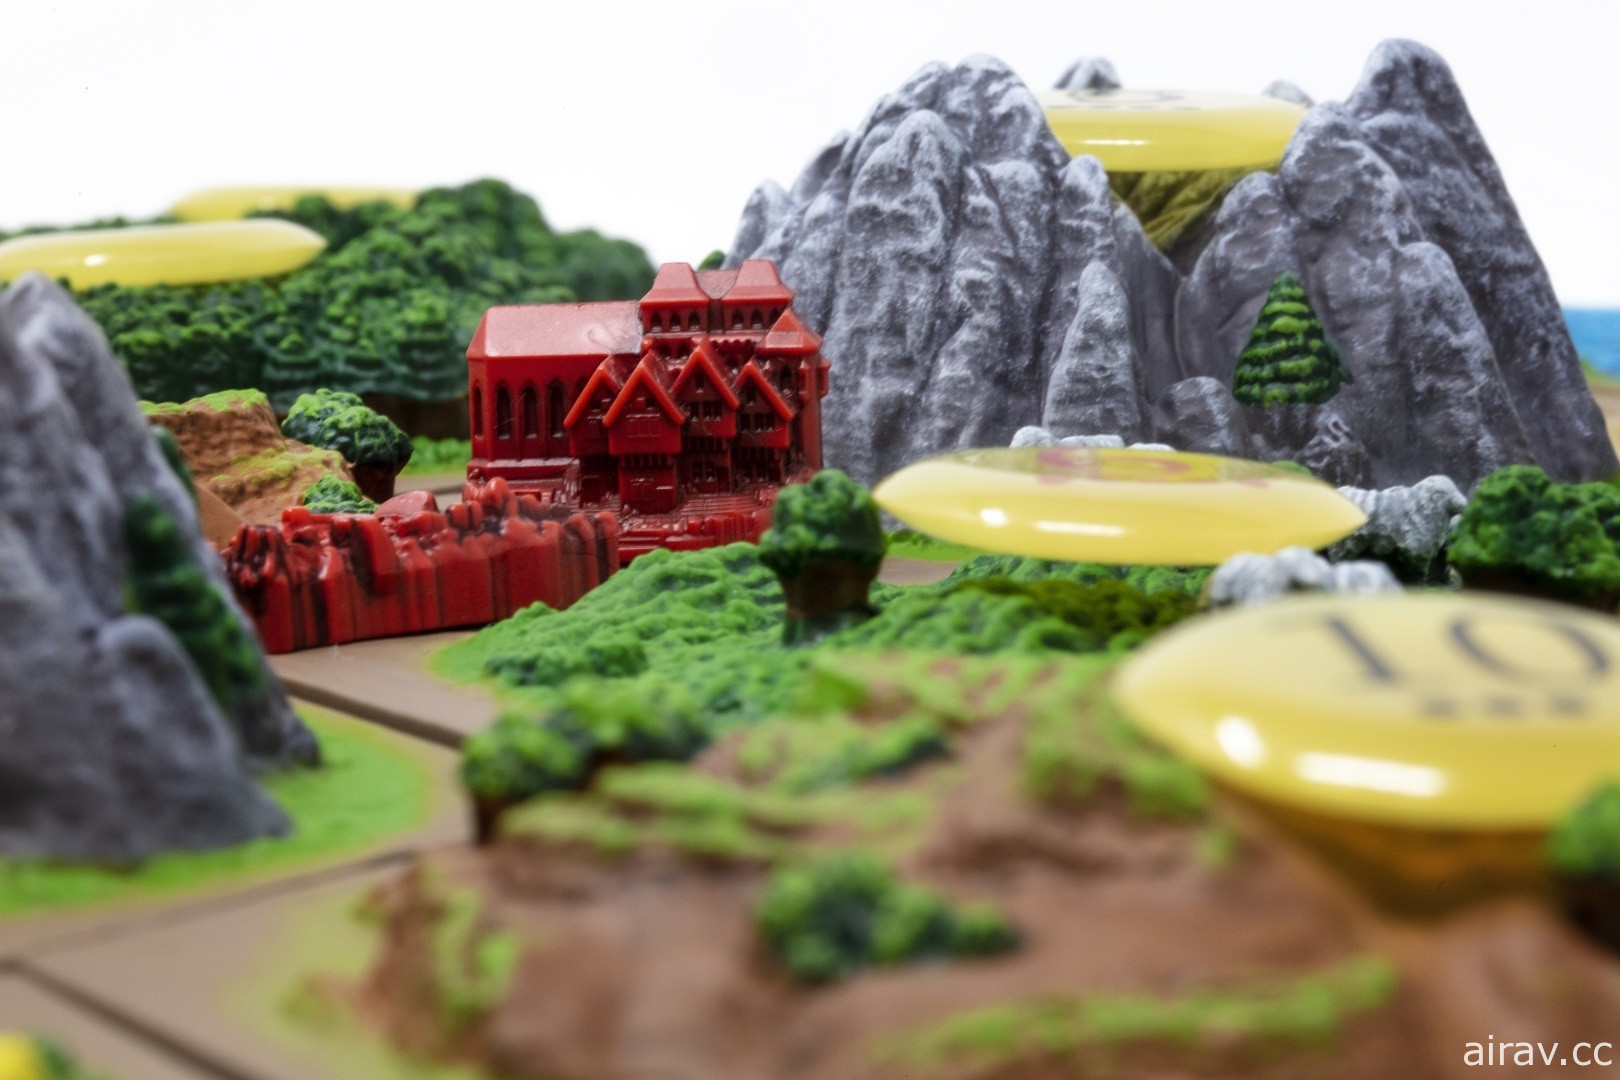 经典桌上游戏《卡坦岛 3D》将推出繁中典藏版 全台限量 500 套